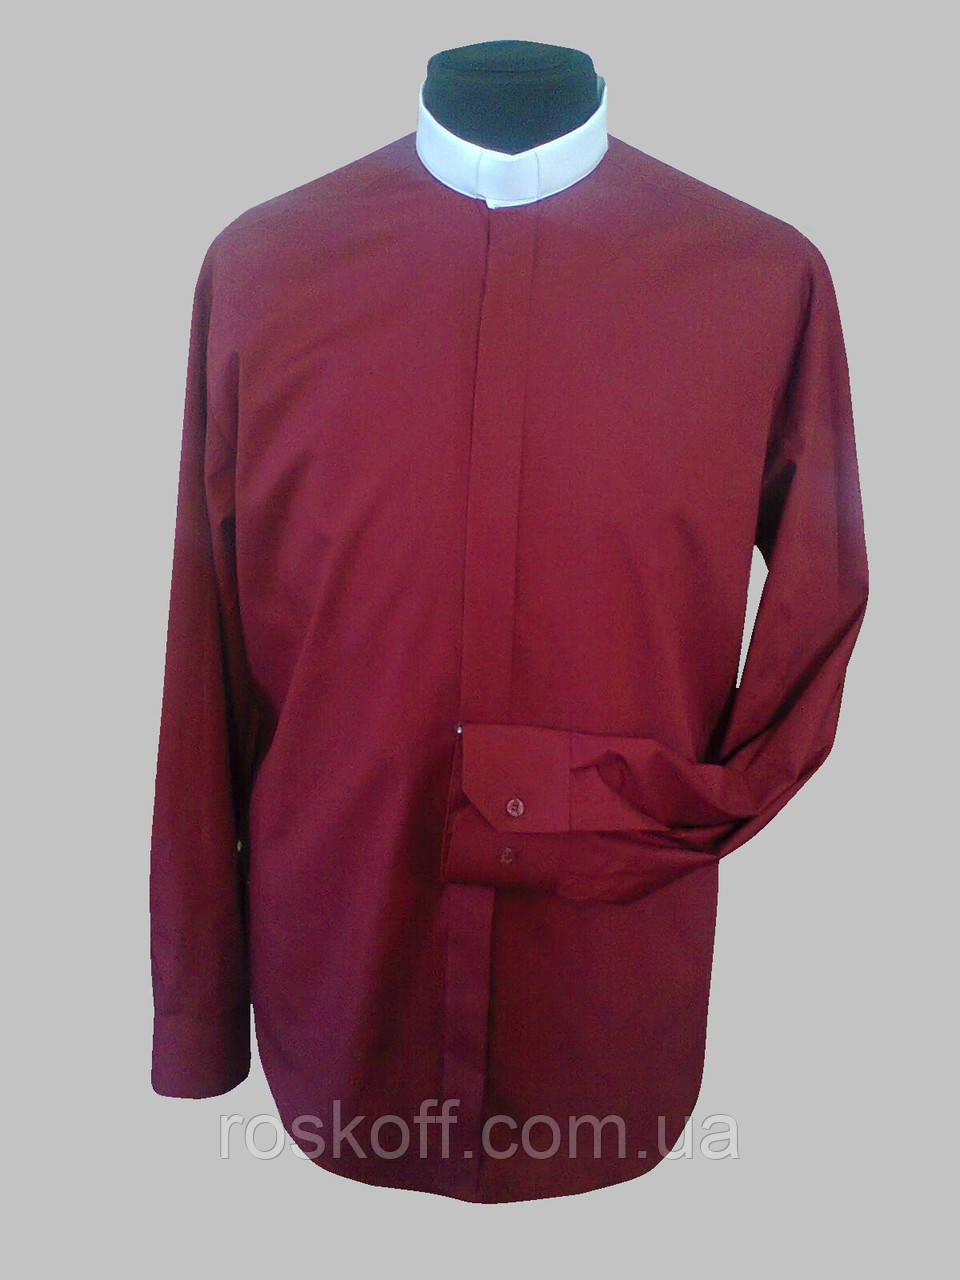 Сорочка для священників (білий комір) бордового кольору з довгим рукавом